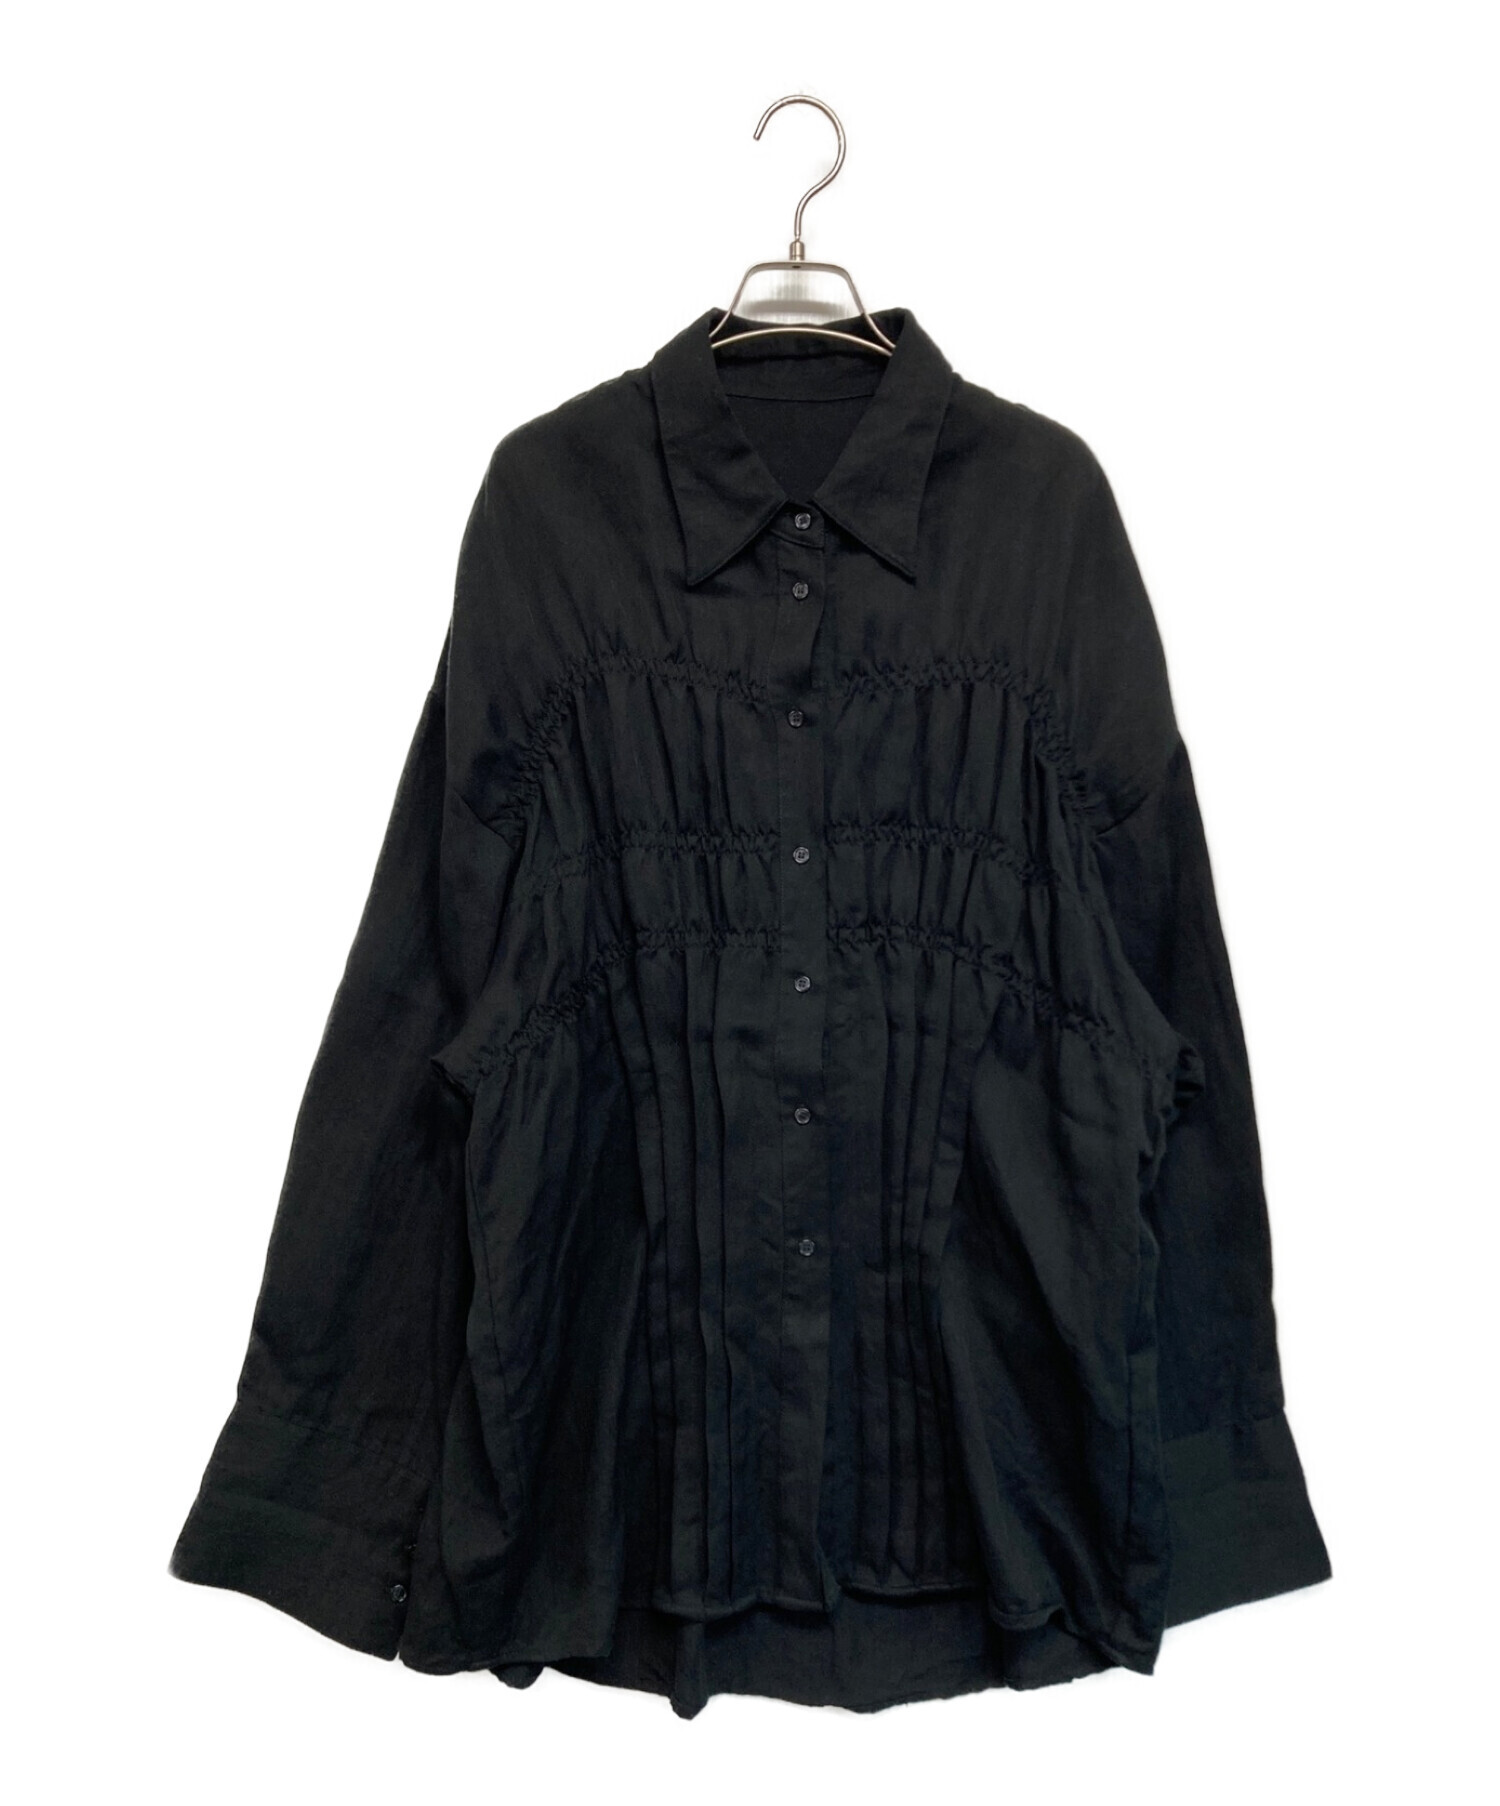 正規品 knuth shirt/black TOPS marf shirring shirring shirt/black トップス